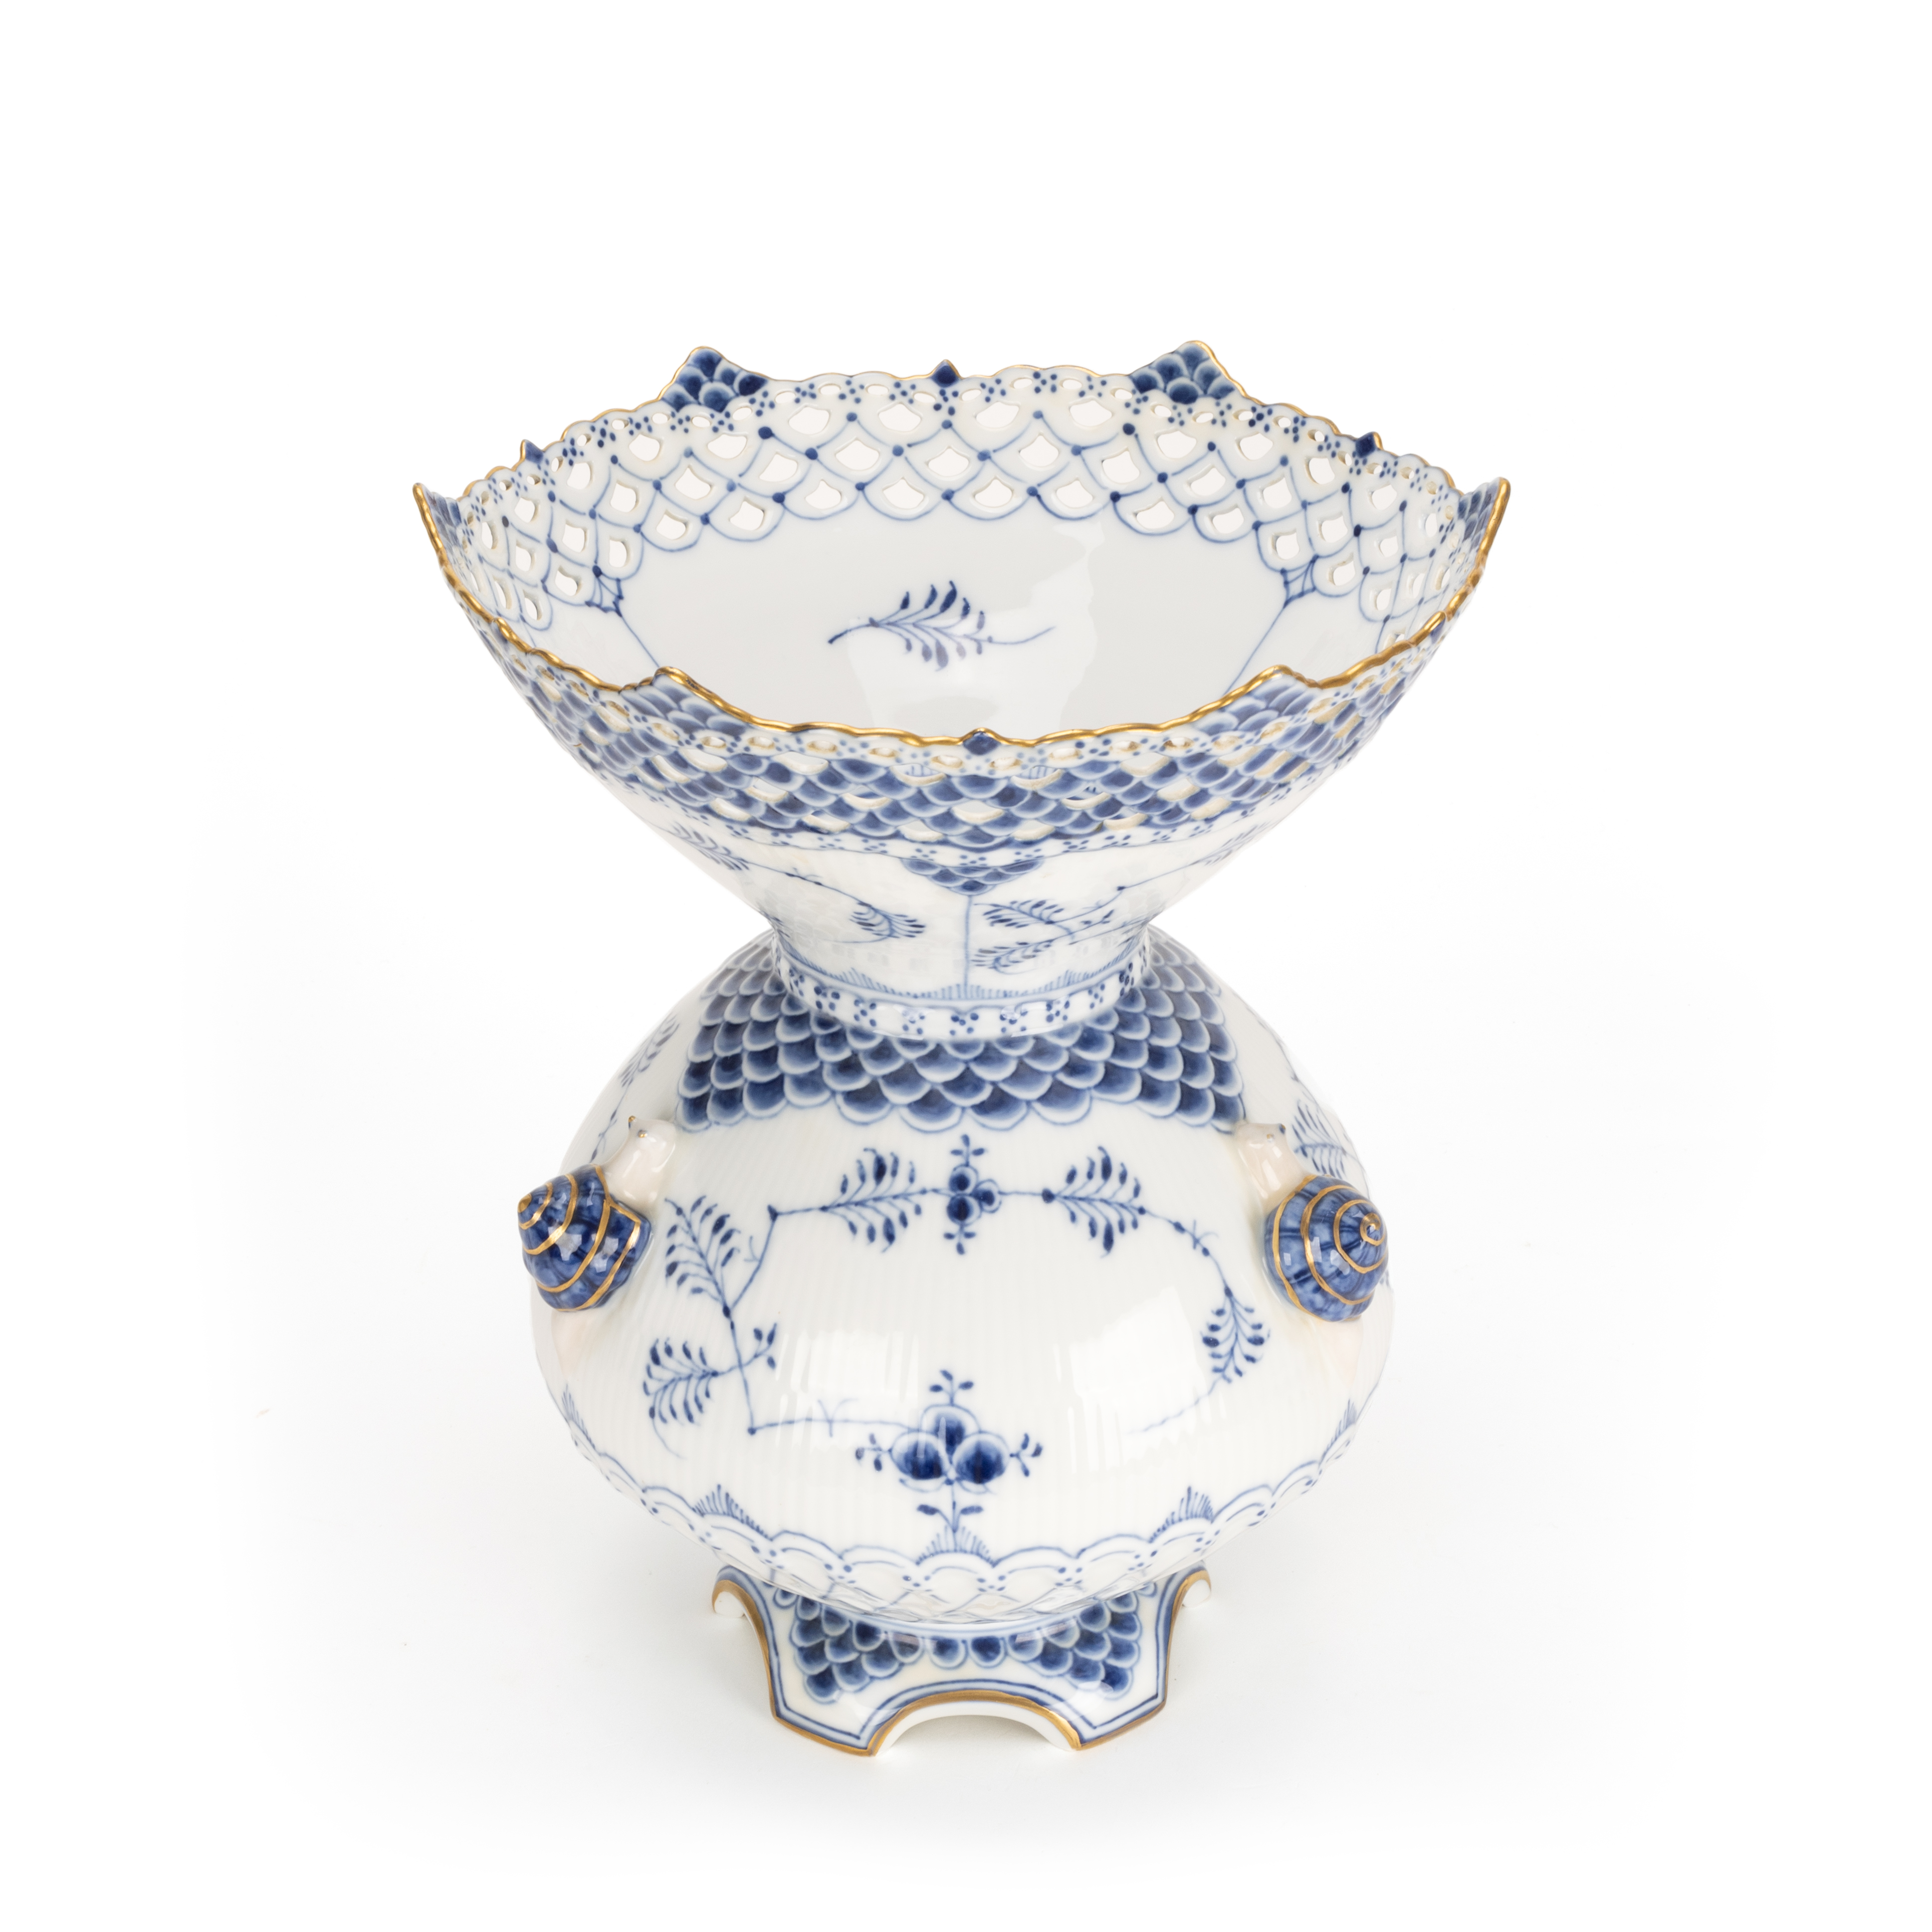 Royal Copenhagen große Vase 'Musselmalet' mit Schnecken - Bild 3 aus 4